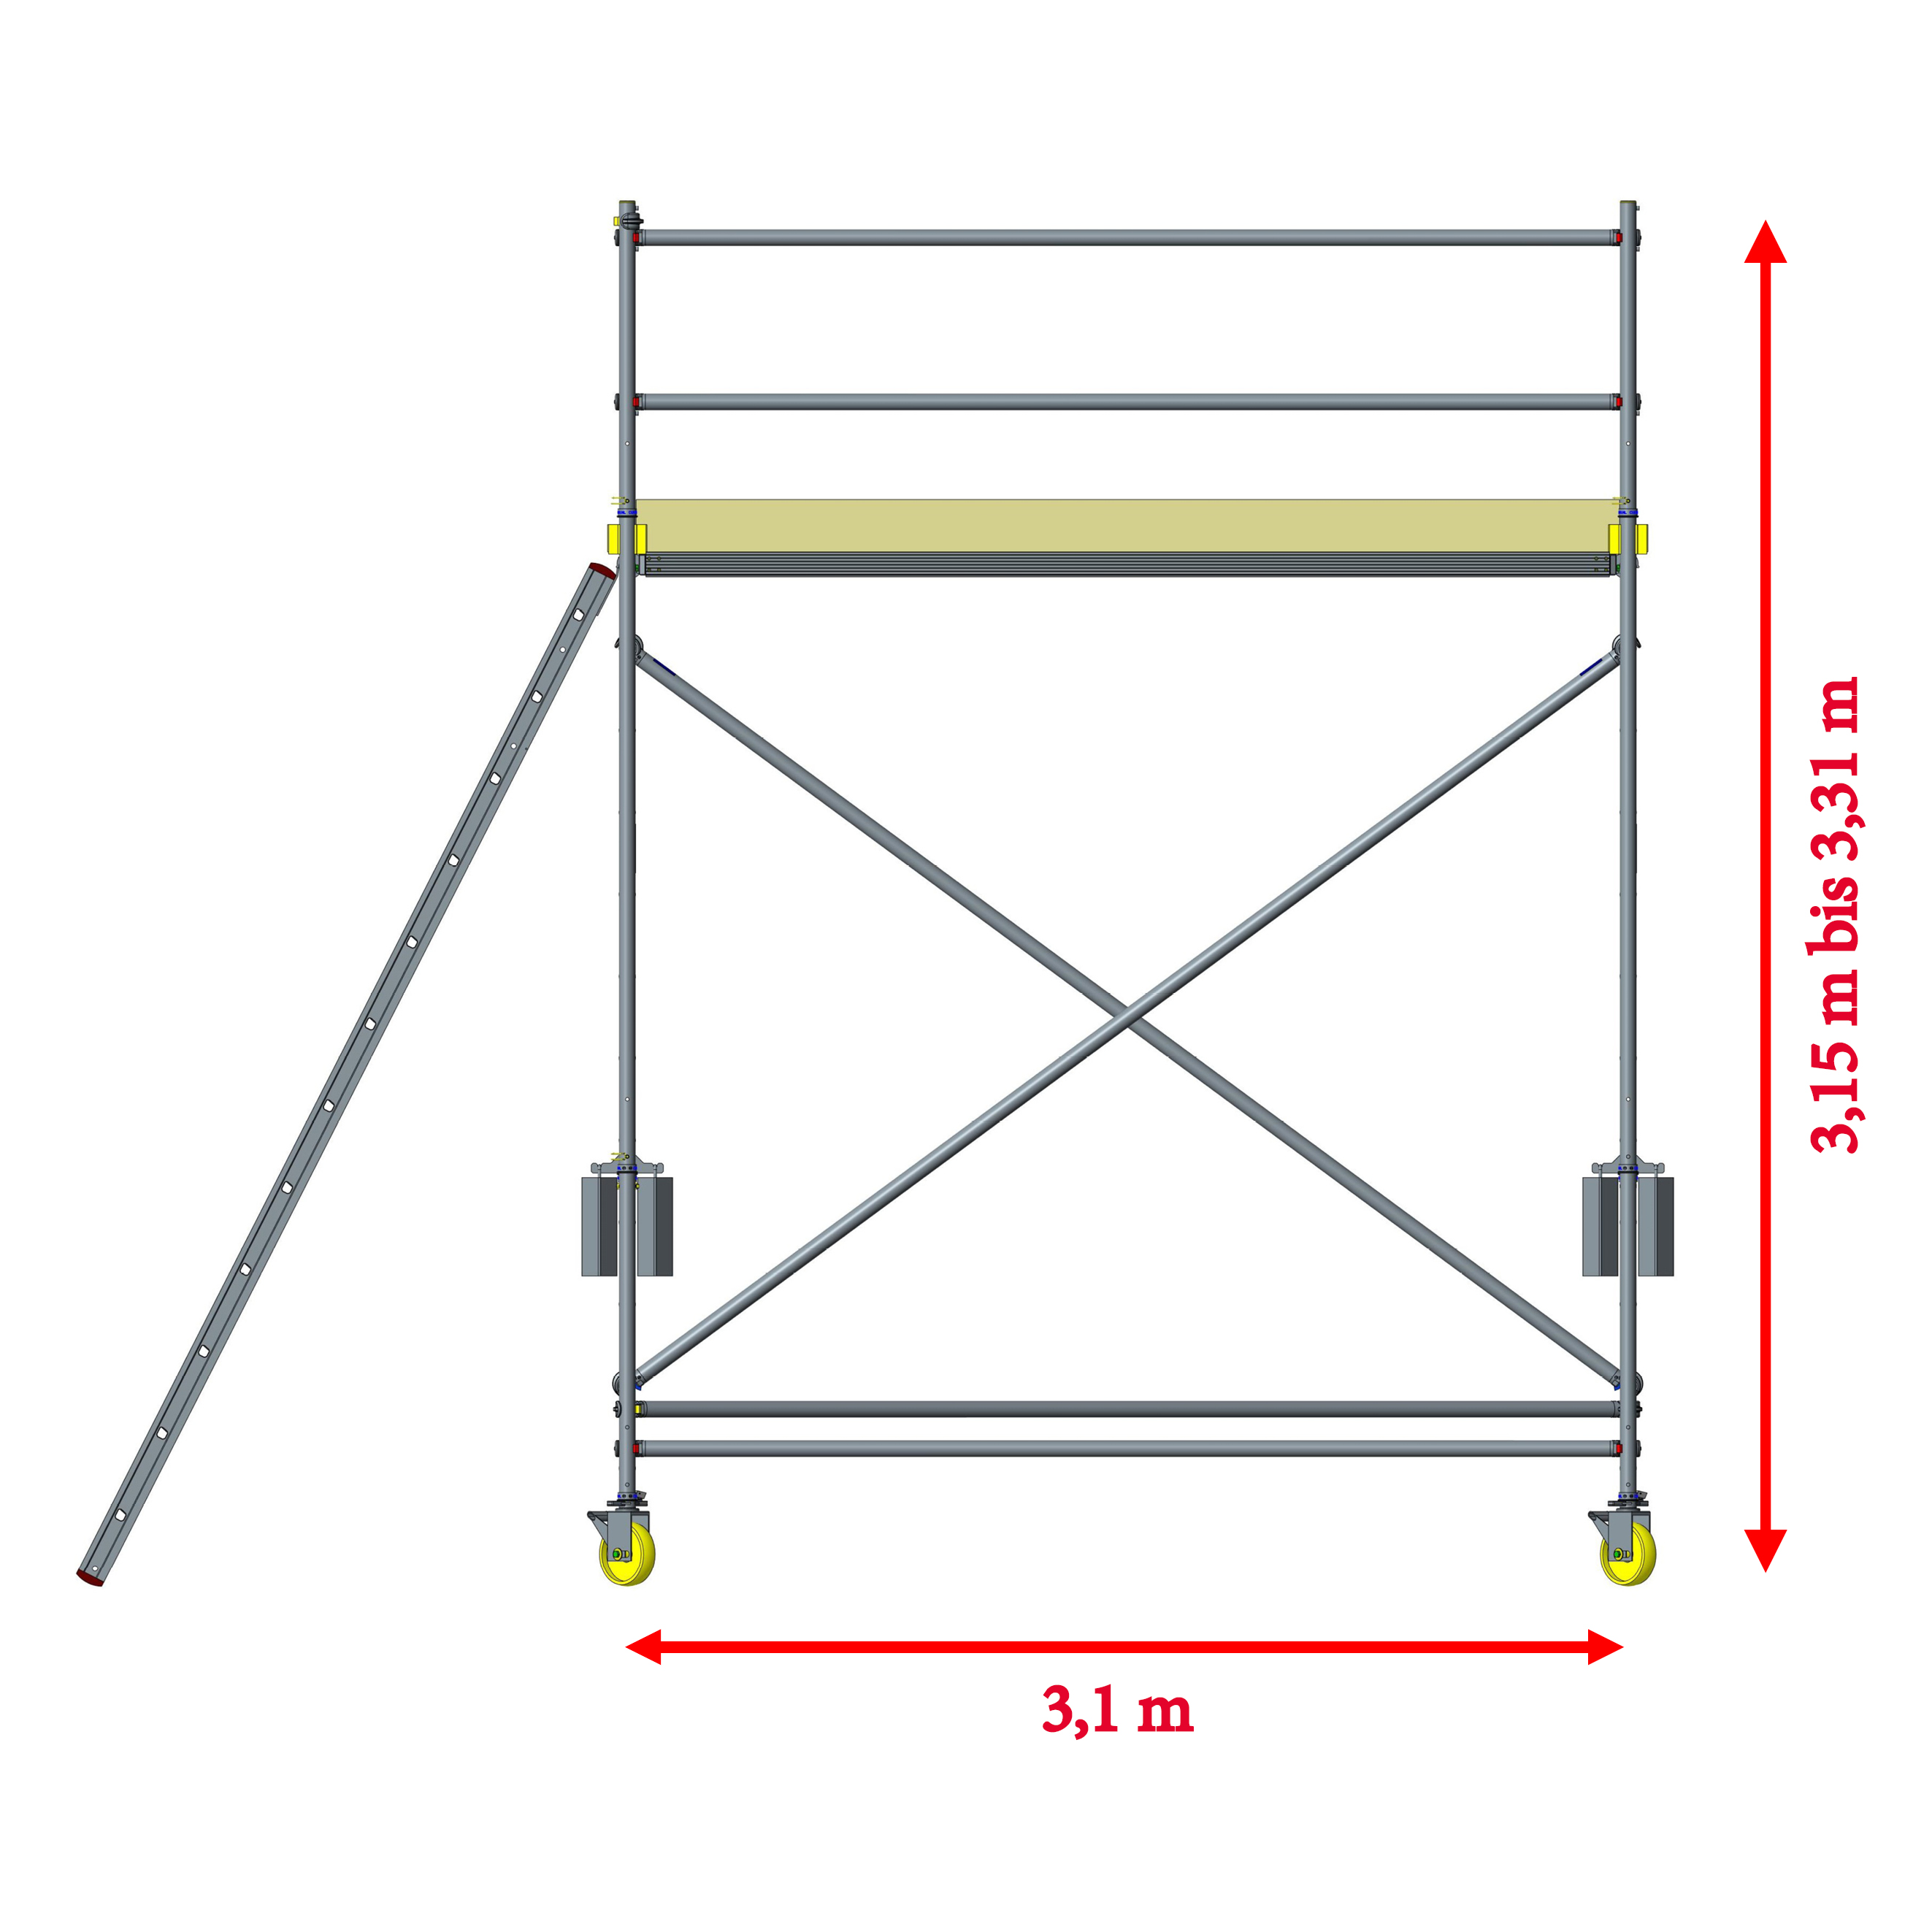 Custers Enteisungsgerüst fahrbar mit Leiter, 3,1 m 